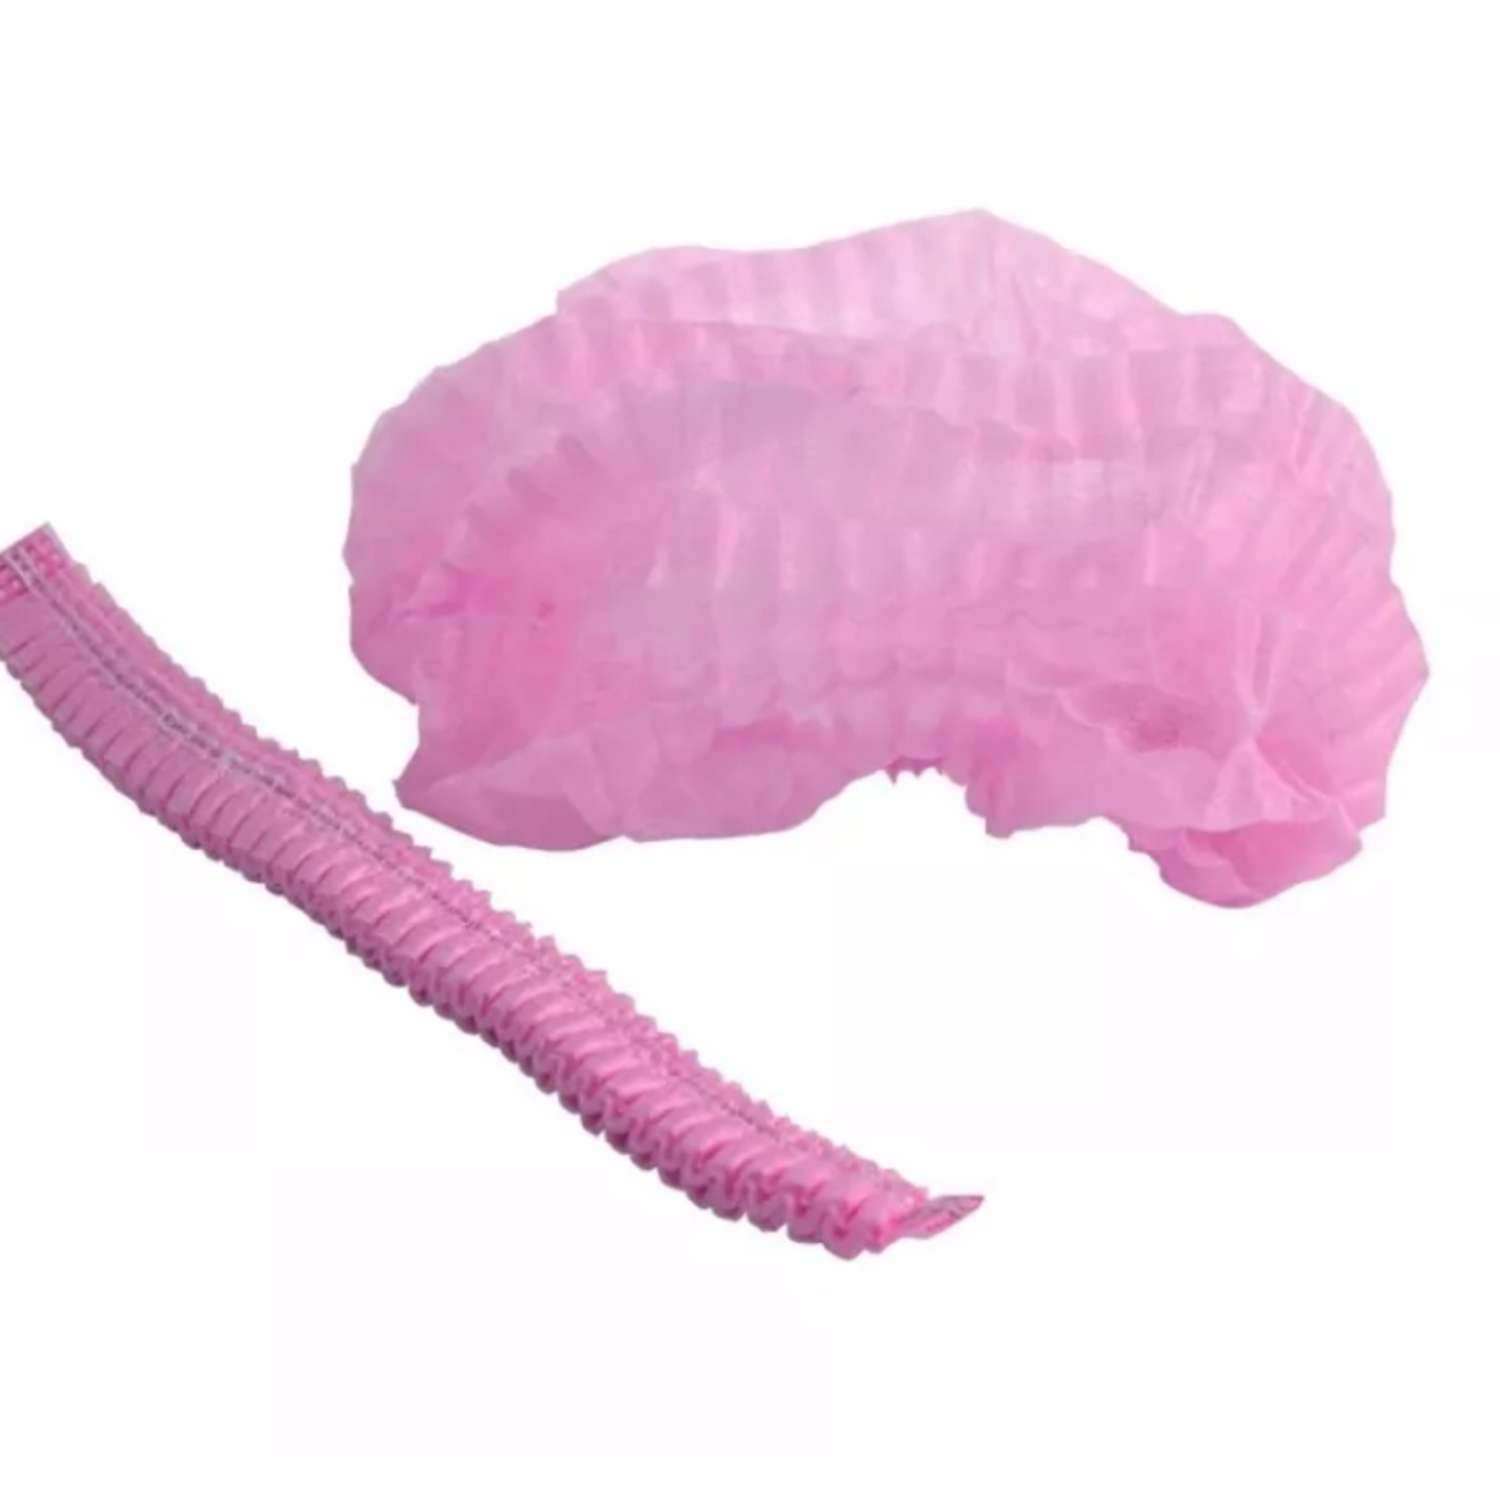 Шапочка шарлотка Чистовье одноразовая медицинская из спанбонда розовая 50 штук - фото 2